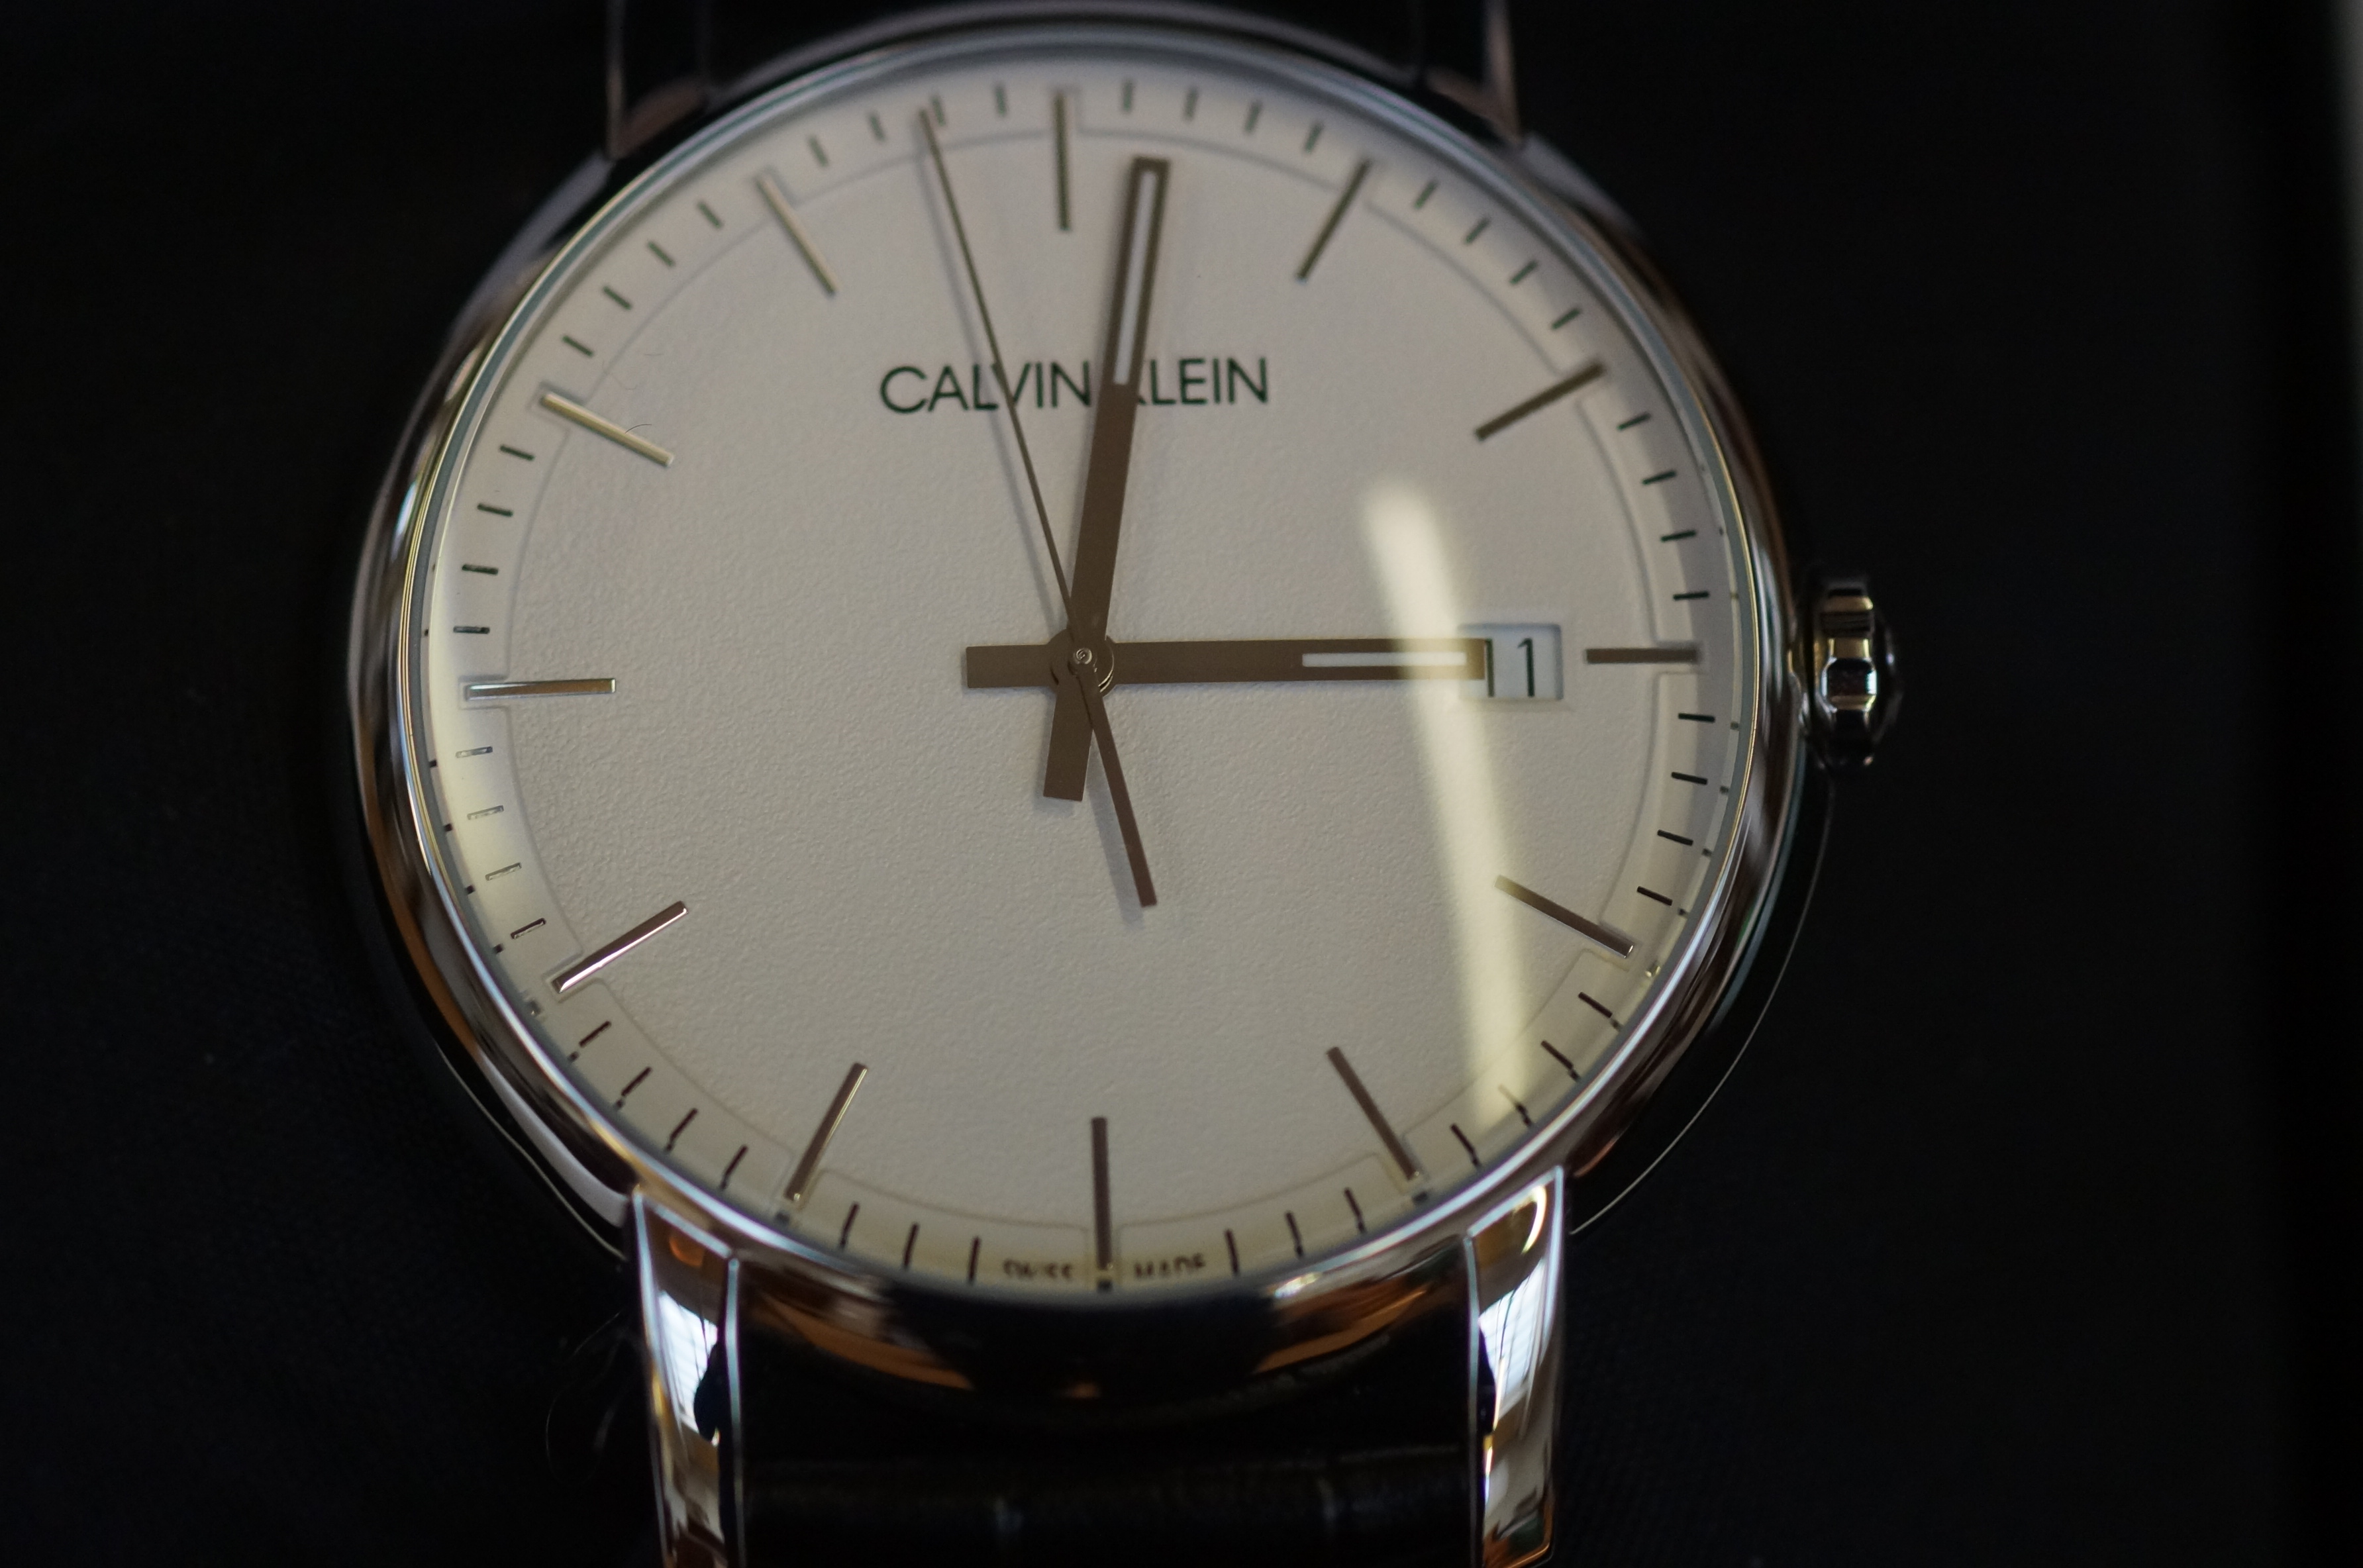 Gents Calvin Klein calendar wristwatch (as new)